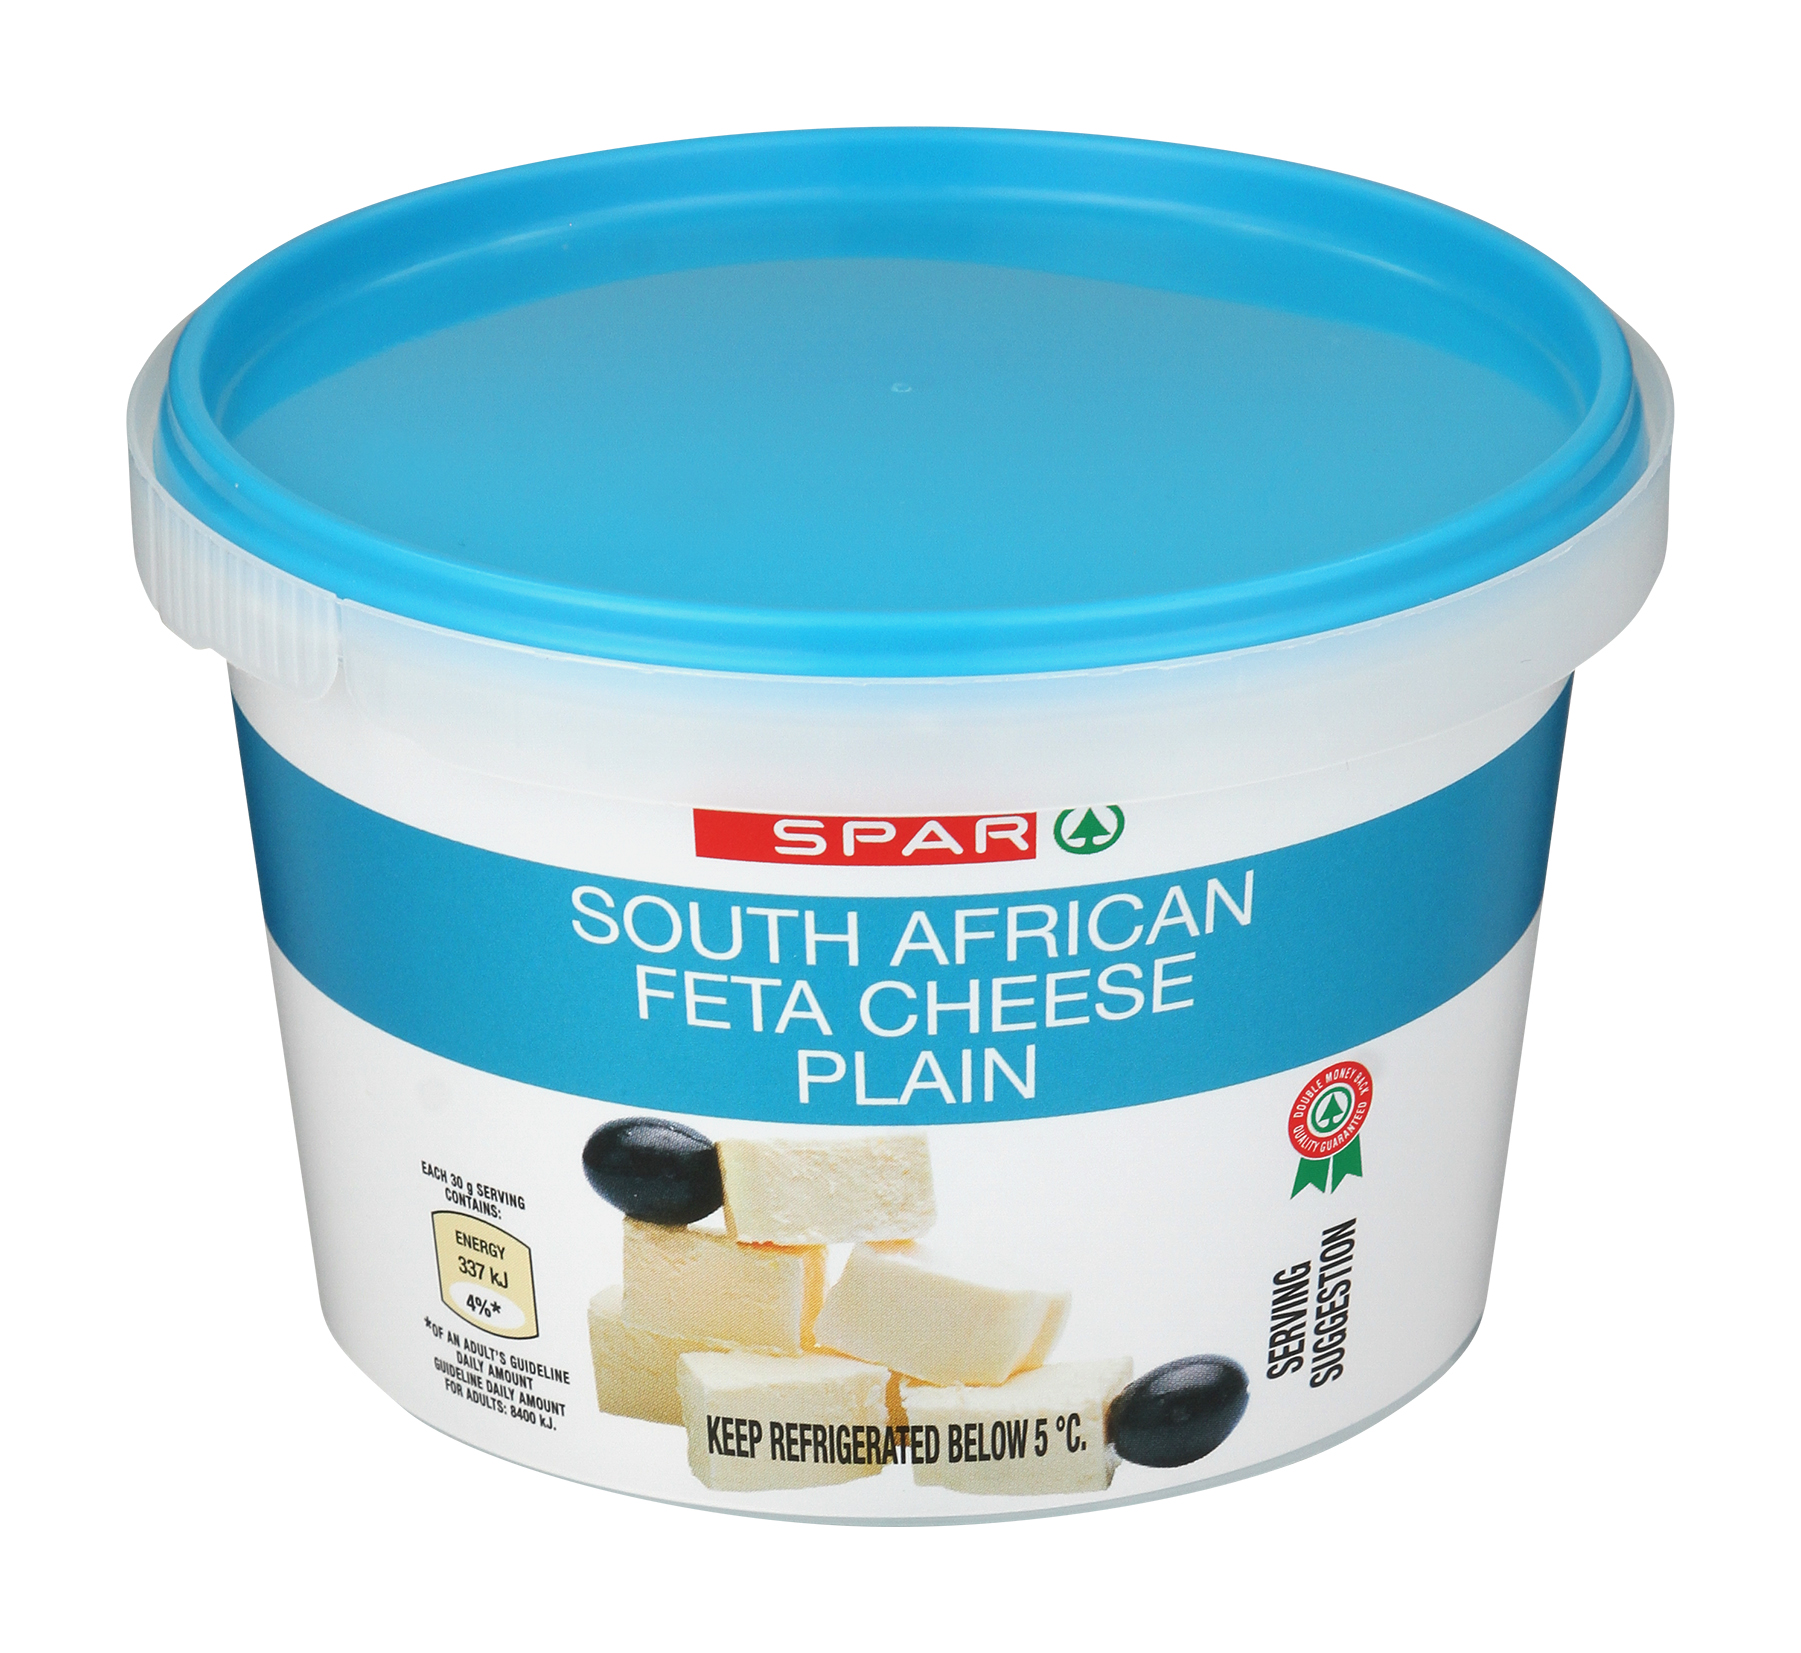 feta cheese - plain